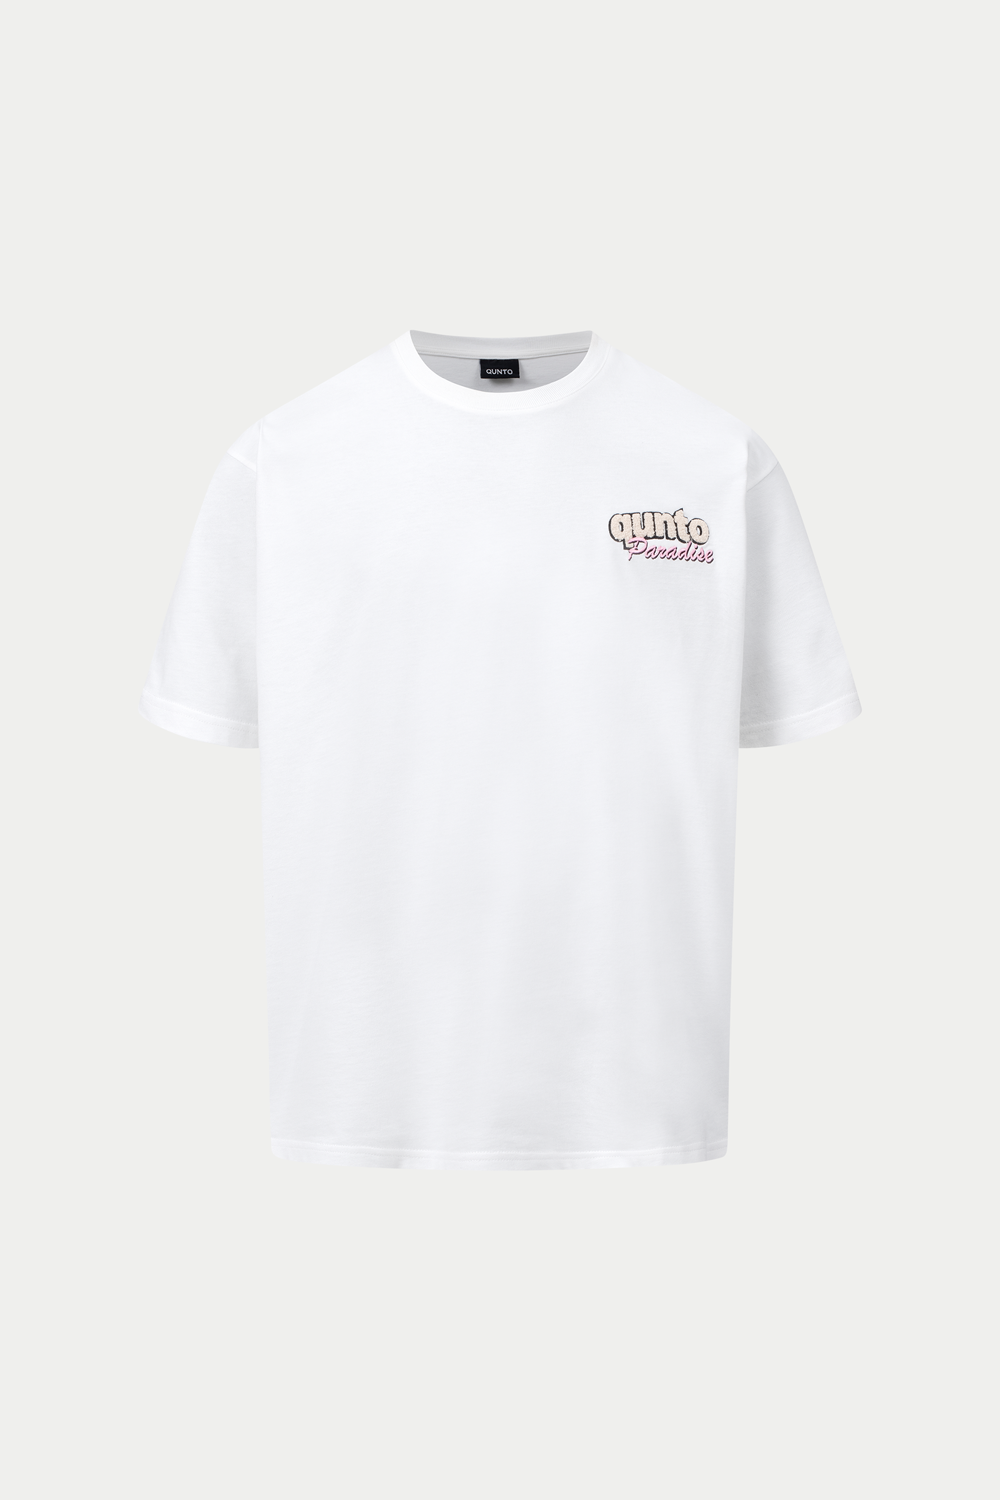 Qunto Paradise CS T-Shirt White